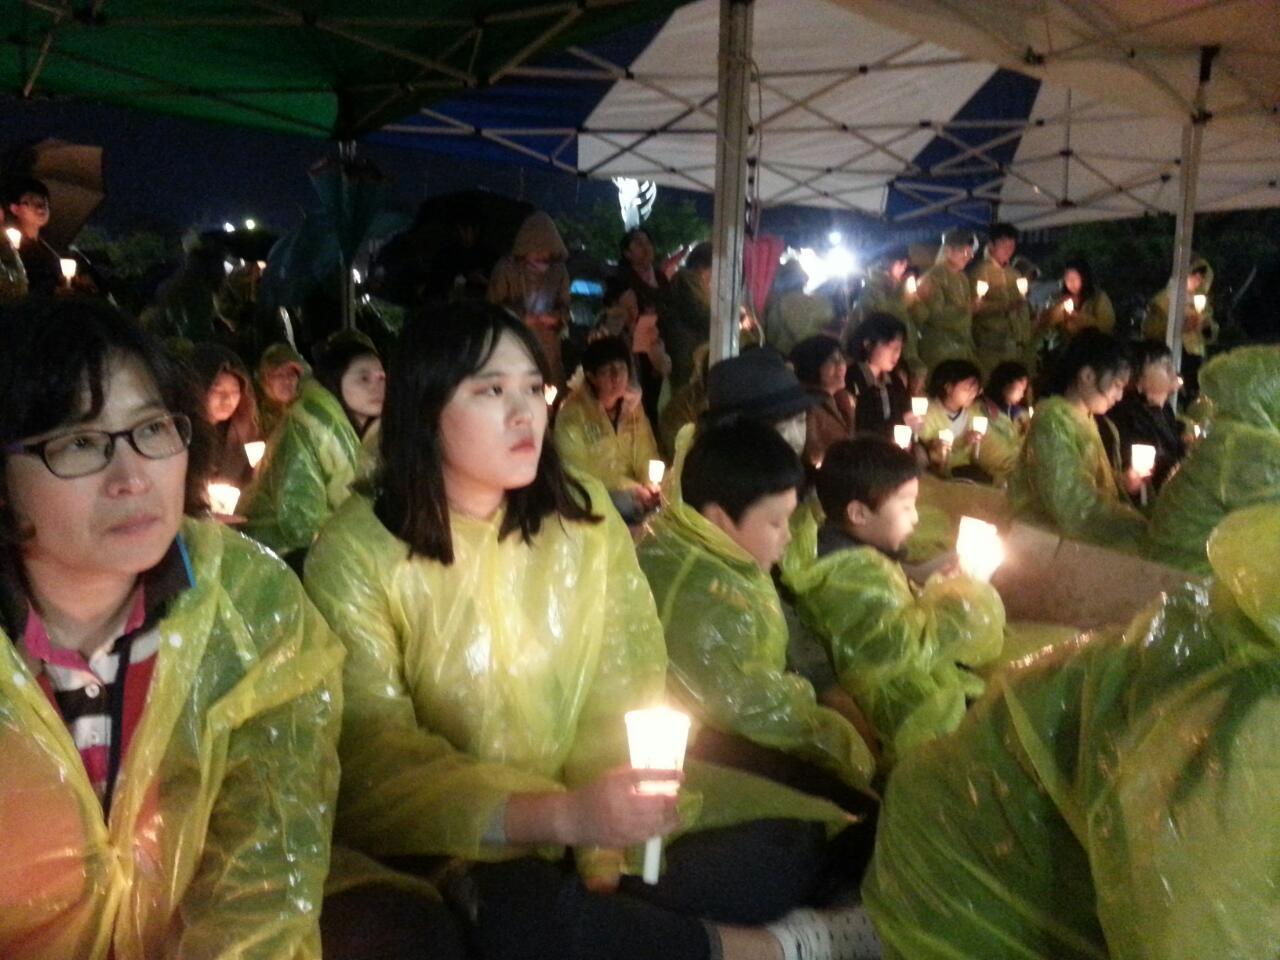 비가 오는 궂은 날임에도 200 여 명의 시민이 참석해서 촛불을 밝혀 들었다